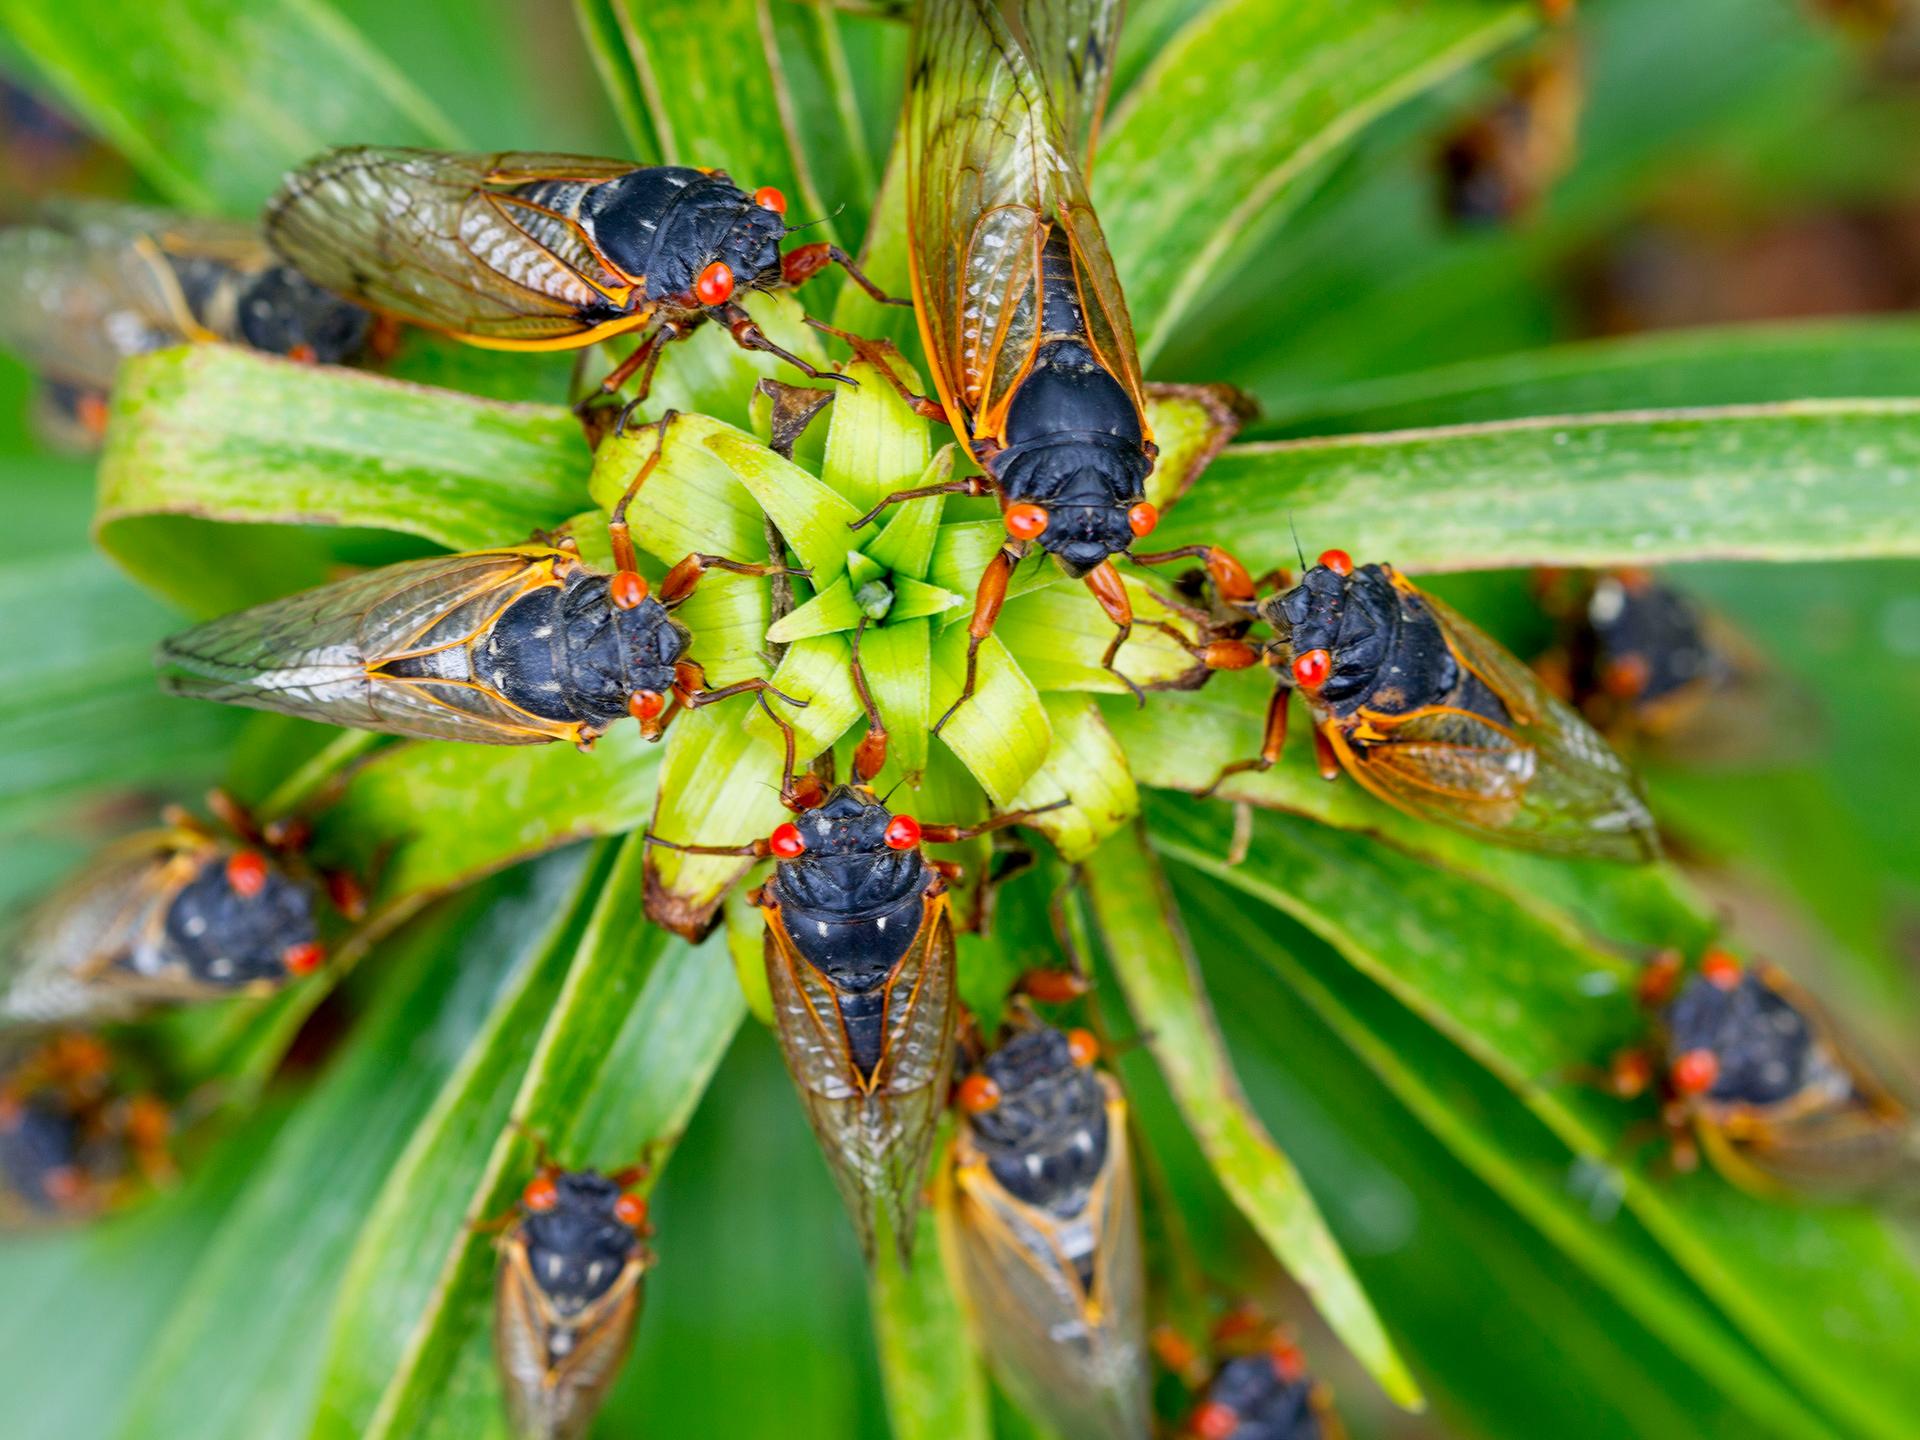 Mehrere Zikaden mit den typischen roten Augen auf grünem Blatt.